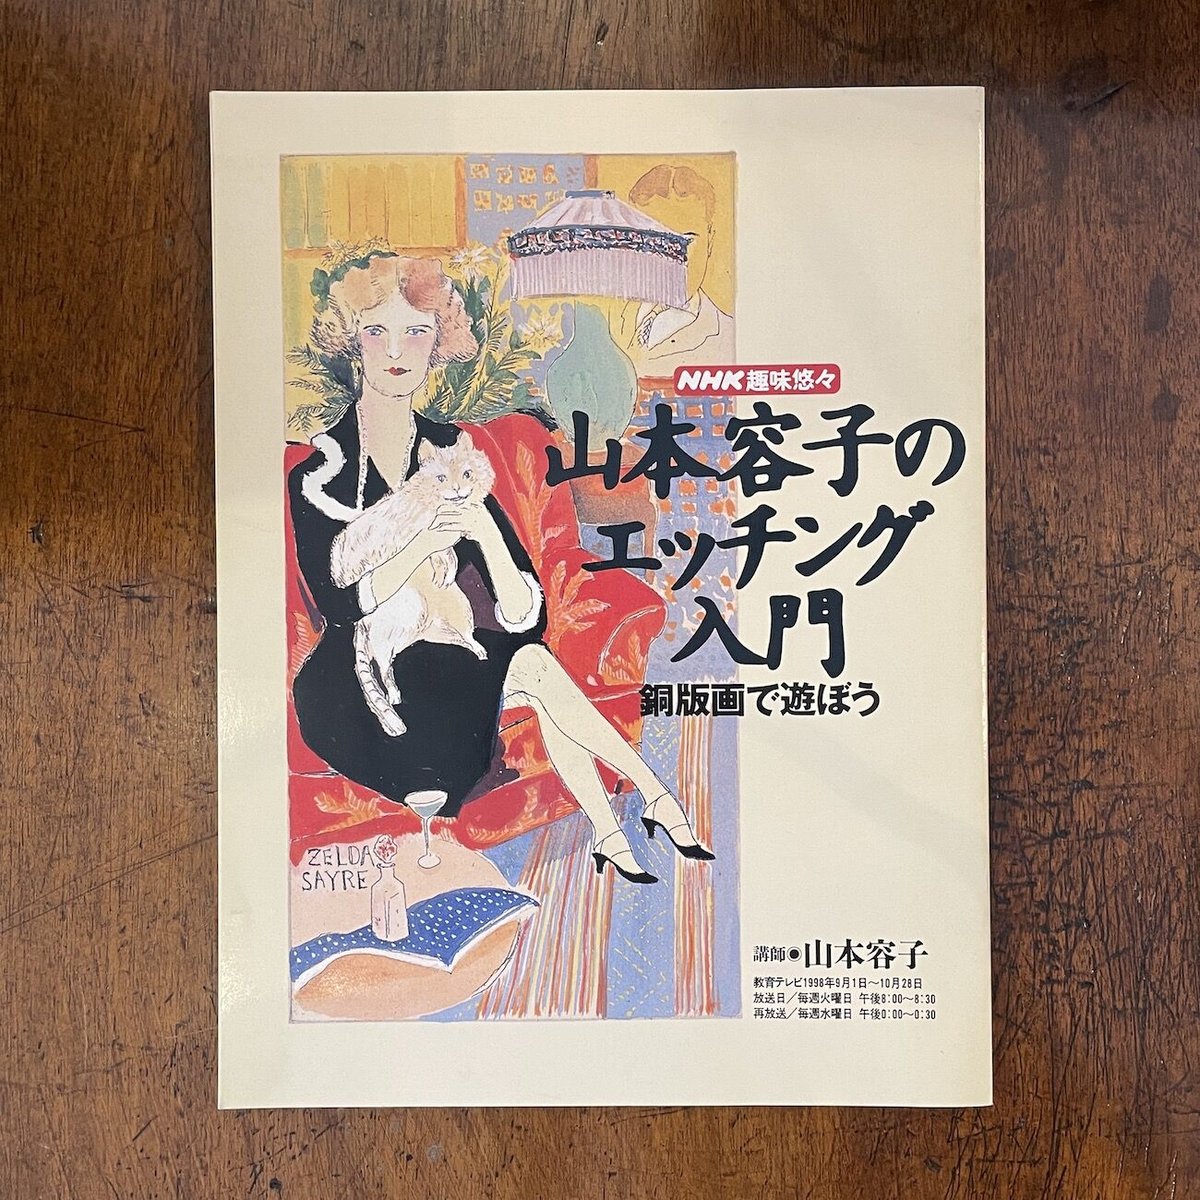 山本容子さんのオリジナル手彩色銅版画 ロミオとジュリエット - 美術品 